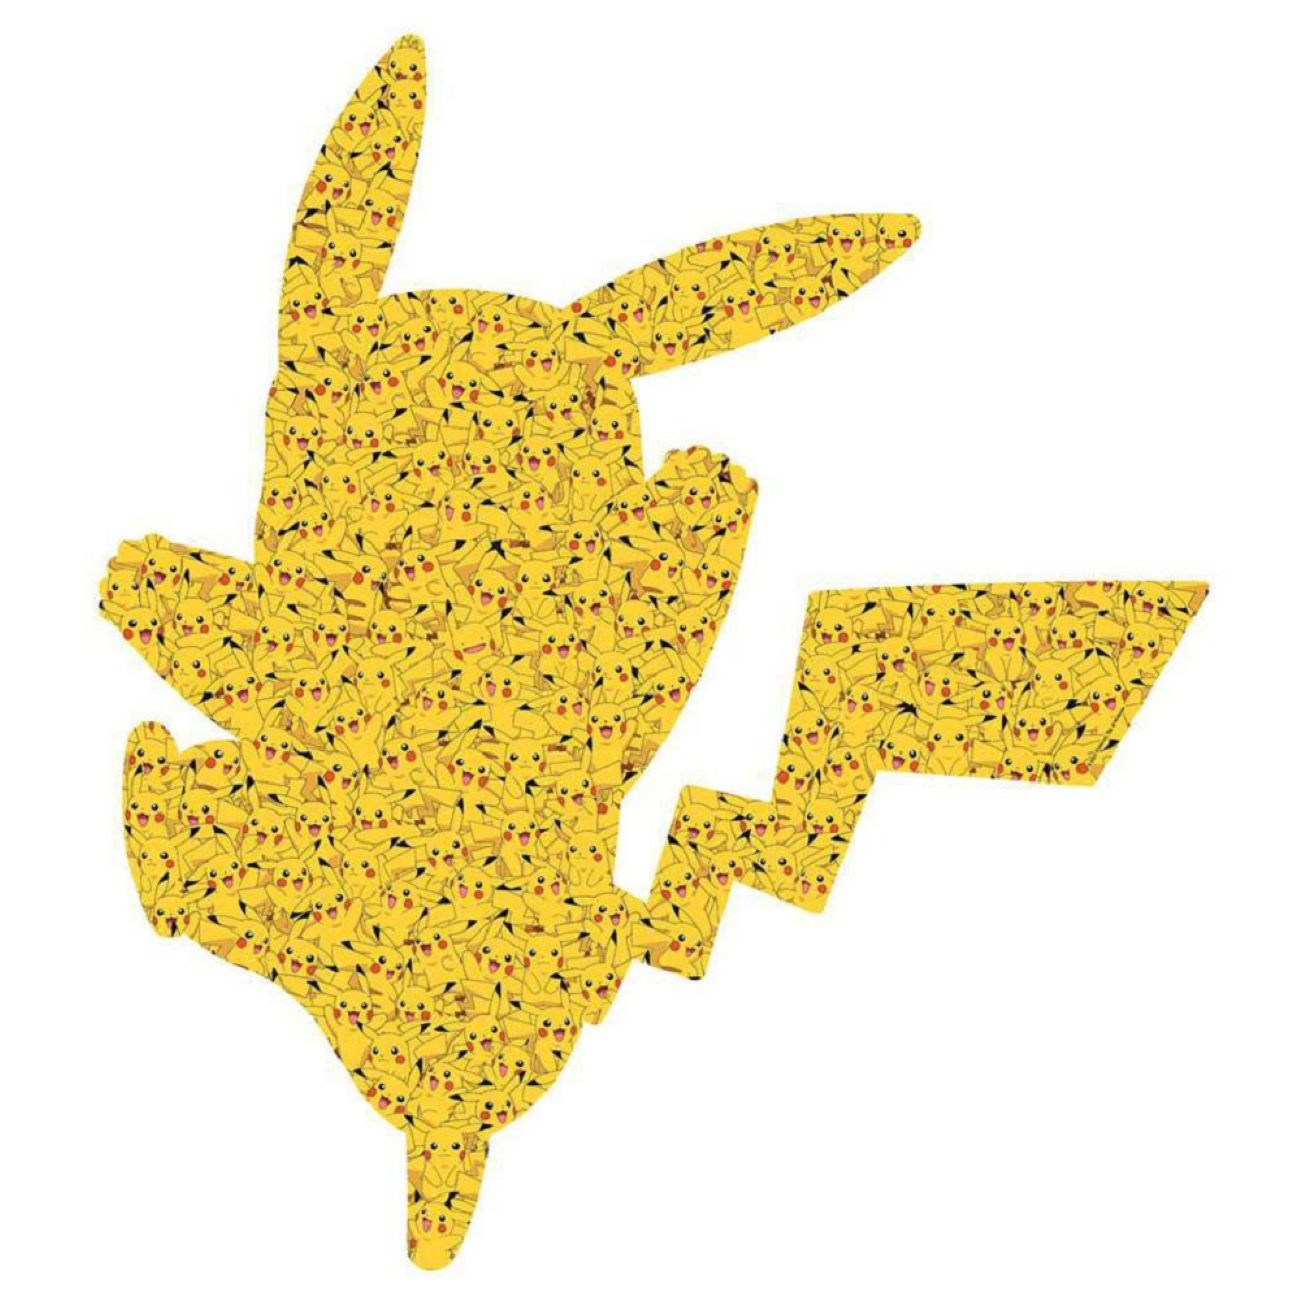 RAVENSBURGER Pokémon Teile) Pikachu (727 Puzzle